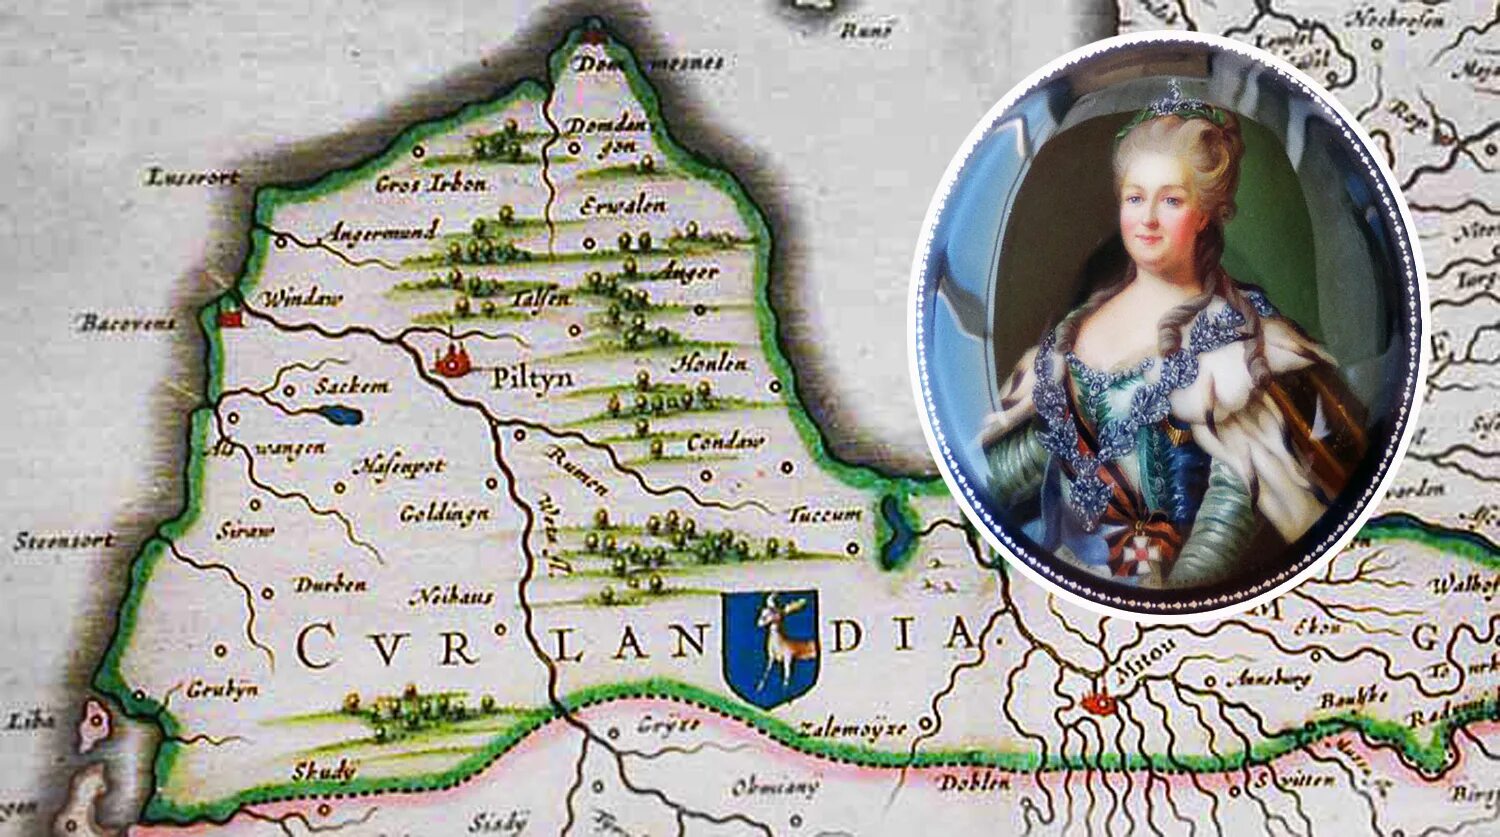 1795 Курляндия. Митава Курляндия. 26 Апреля 1795 года к России присоединилась Курляндия.